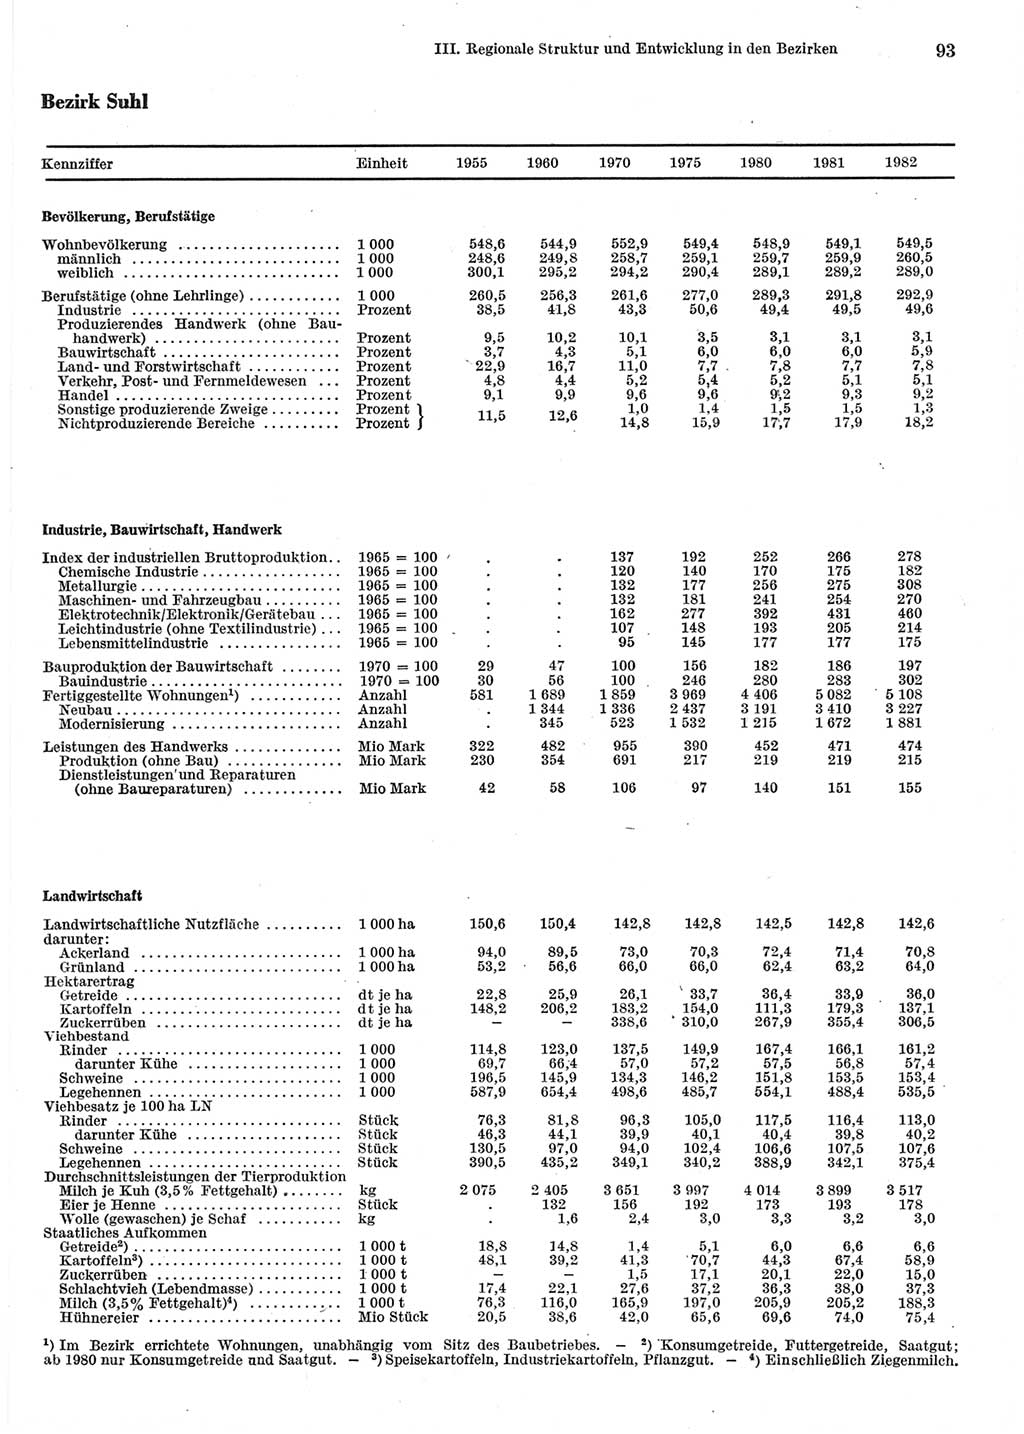 Statistisches Jahrbuch der Deutschen Demokratischen Republik (DDR) 1983, Seite 93 (Stat. Jb. DDR 1983, S. 93)